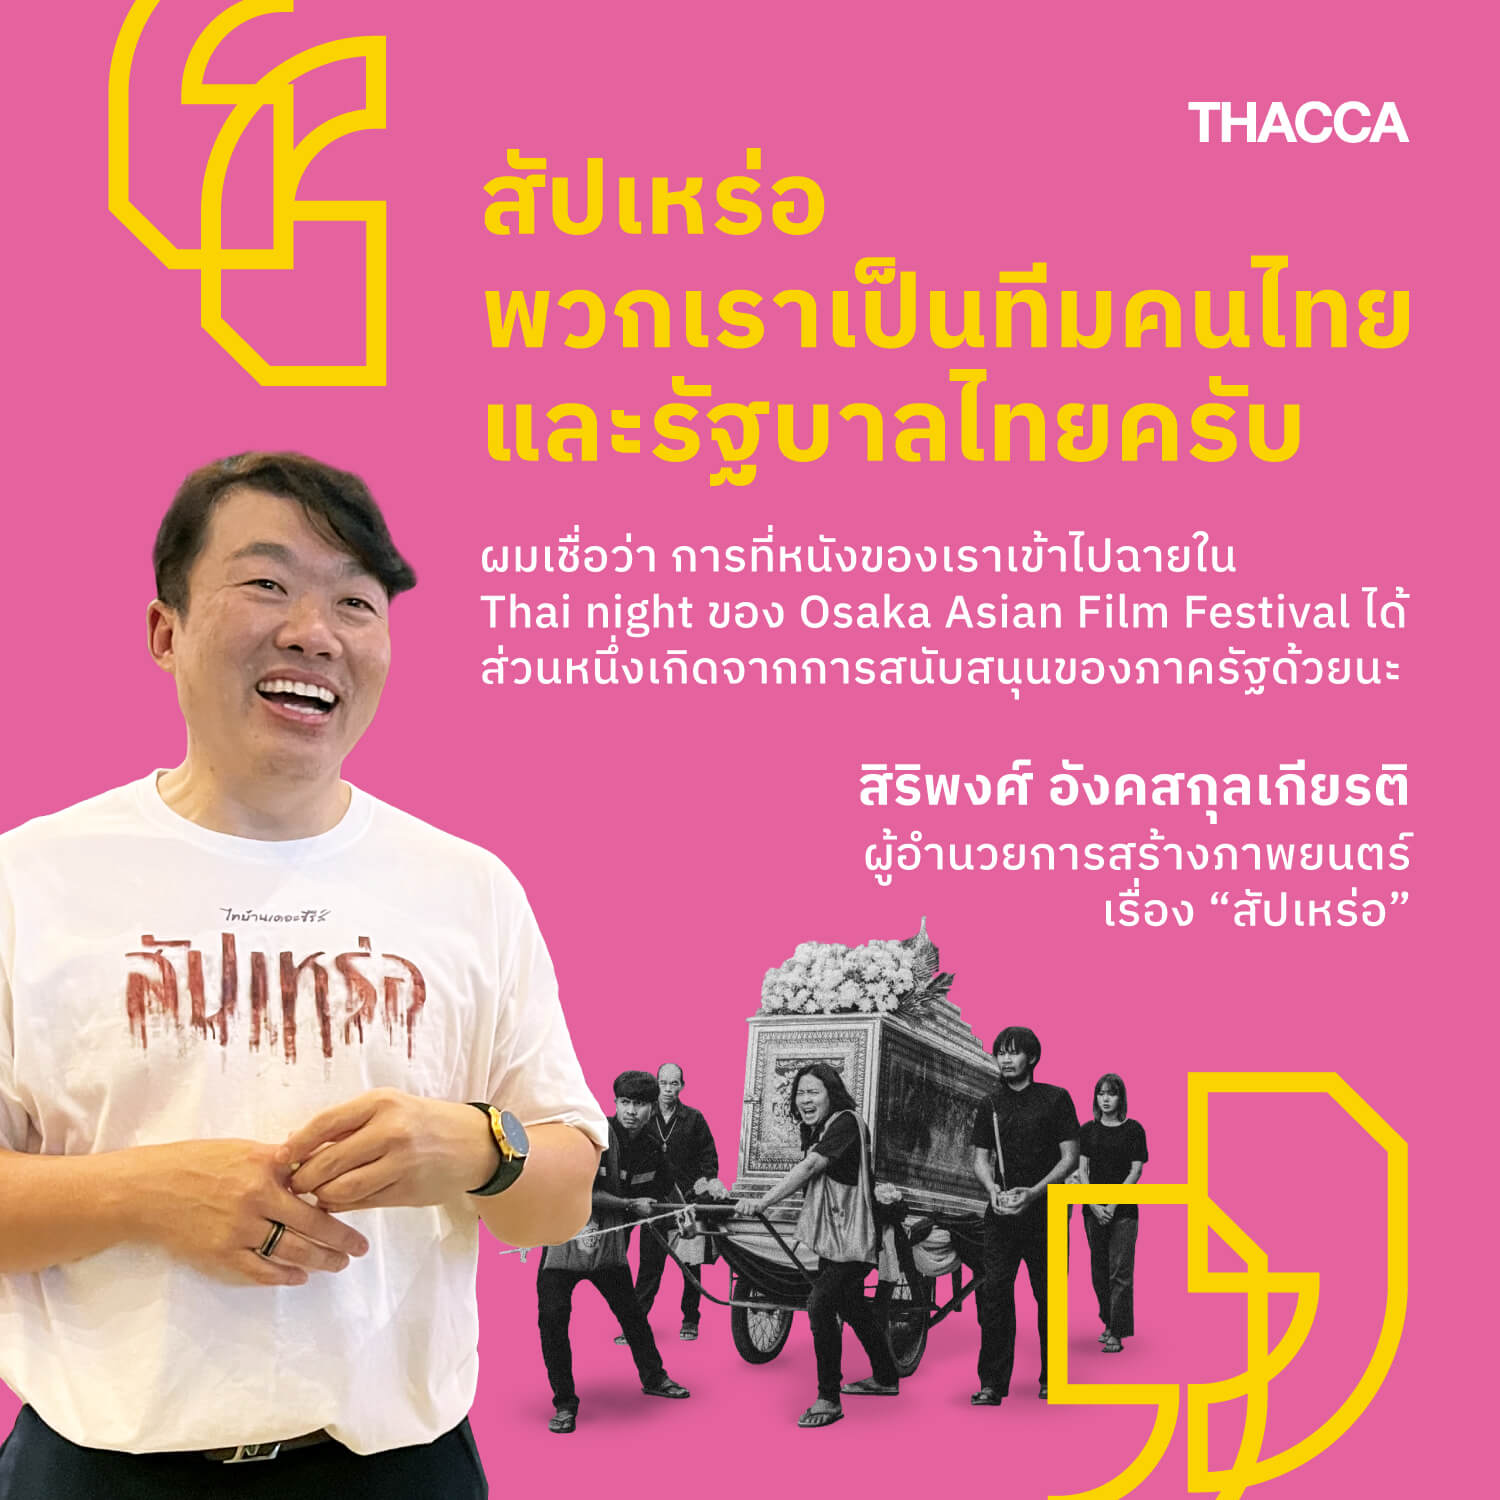 “สัปเหร่อ…พวกเราเป็นทีมคนไทย และ รัฐบาลไทยครับ”